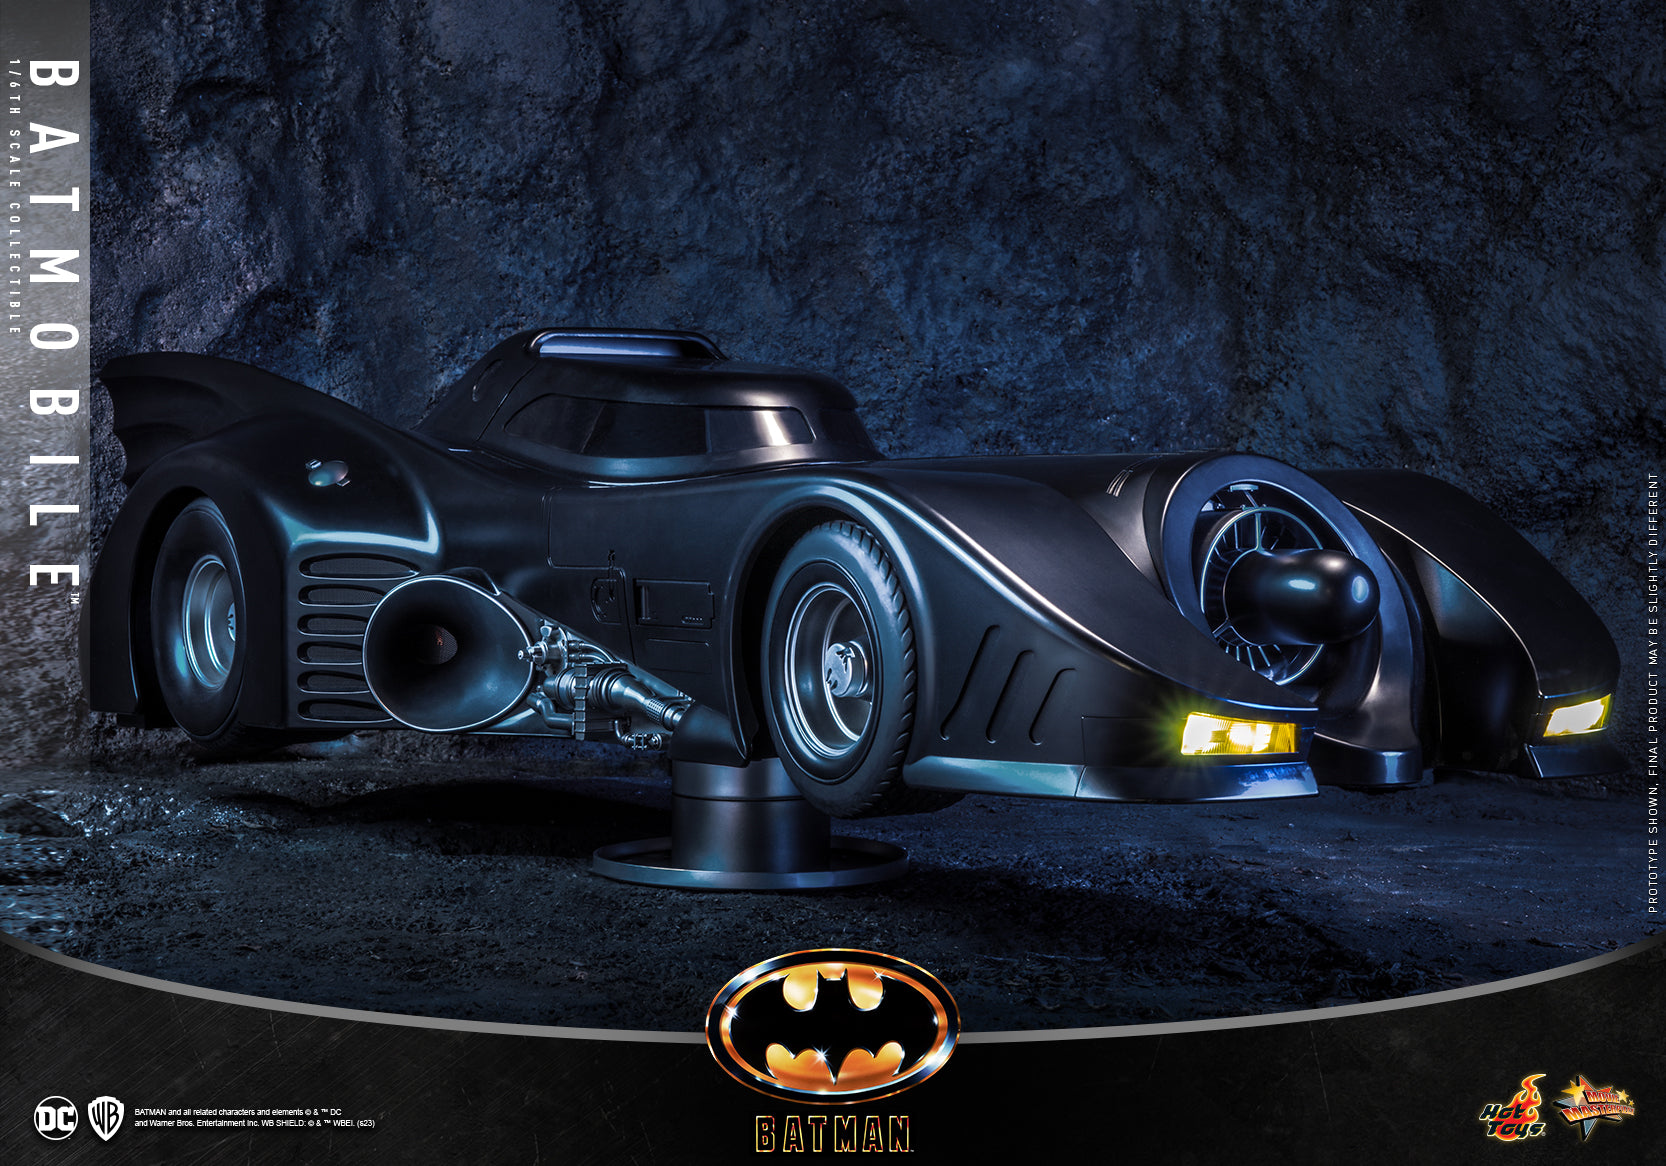 Hot Toys - MMS694 - Batman (1989)  - Batmobile - Marvelous Toys